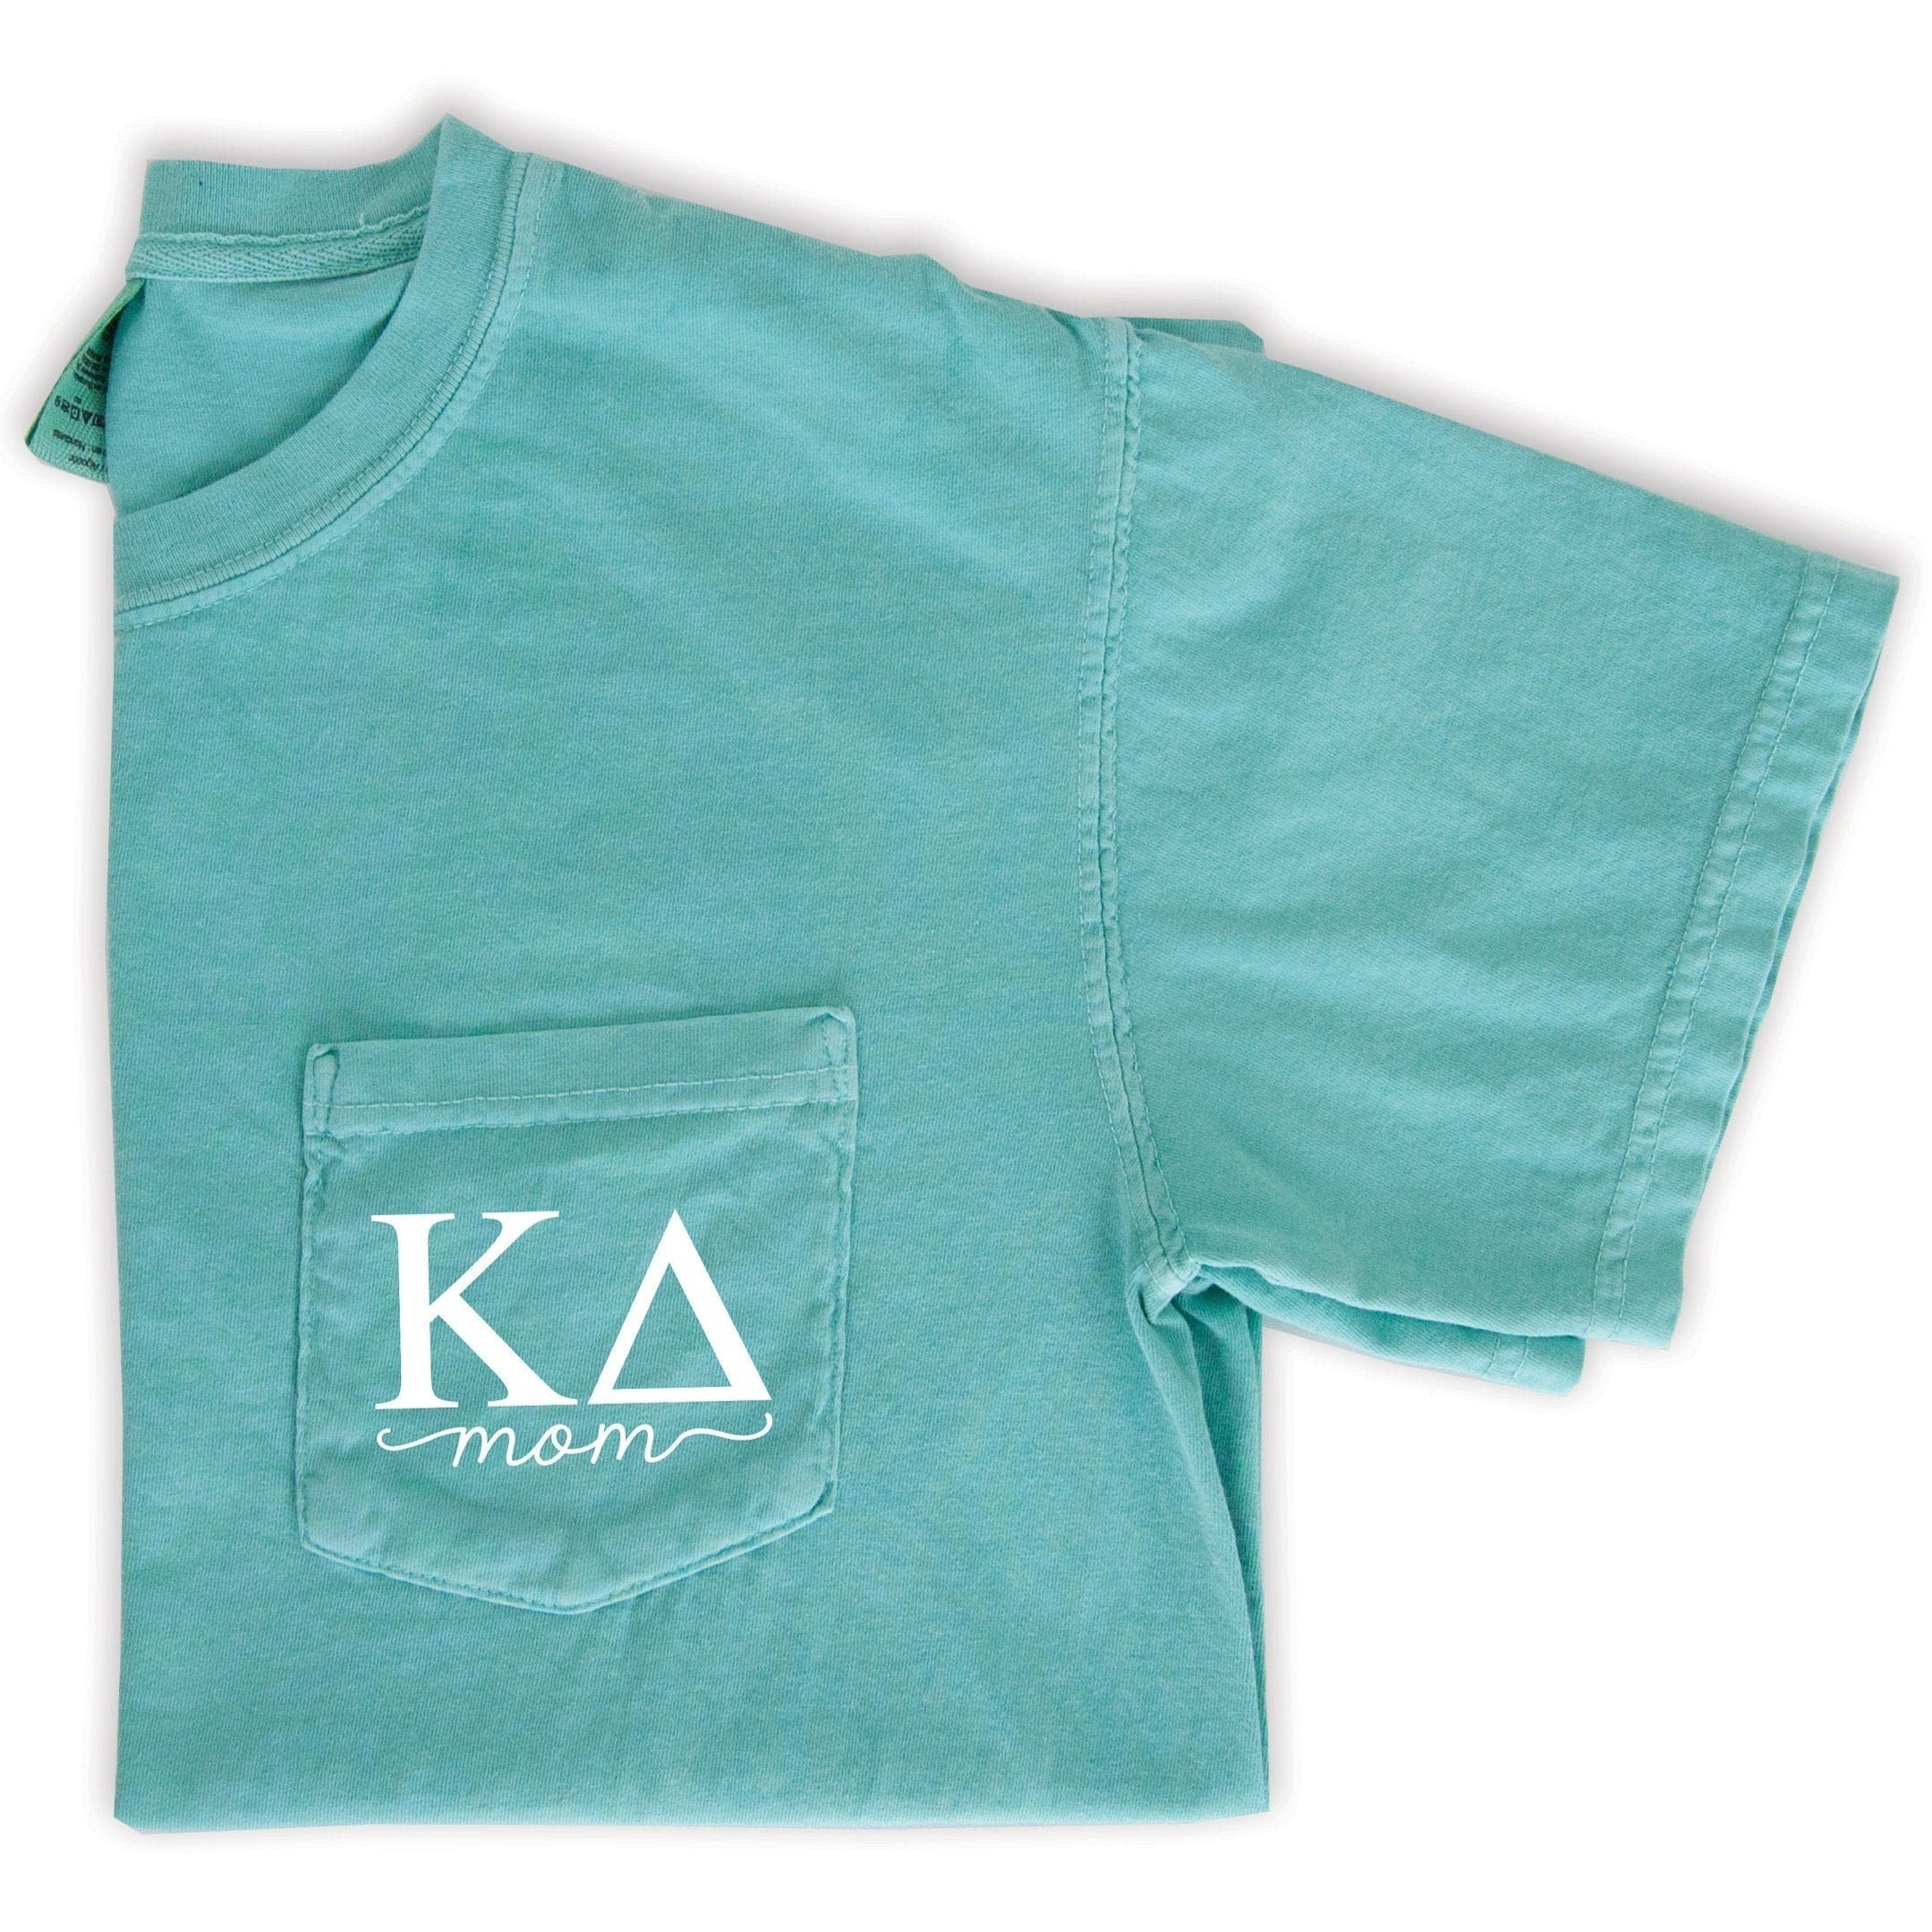 Kappa Delta Mom Shirt - Mint - Go Greek Chic